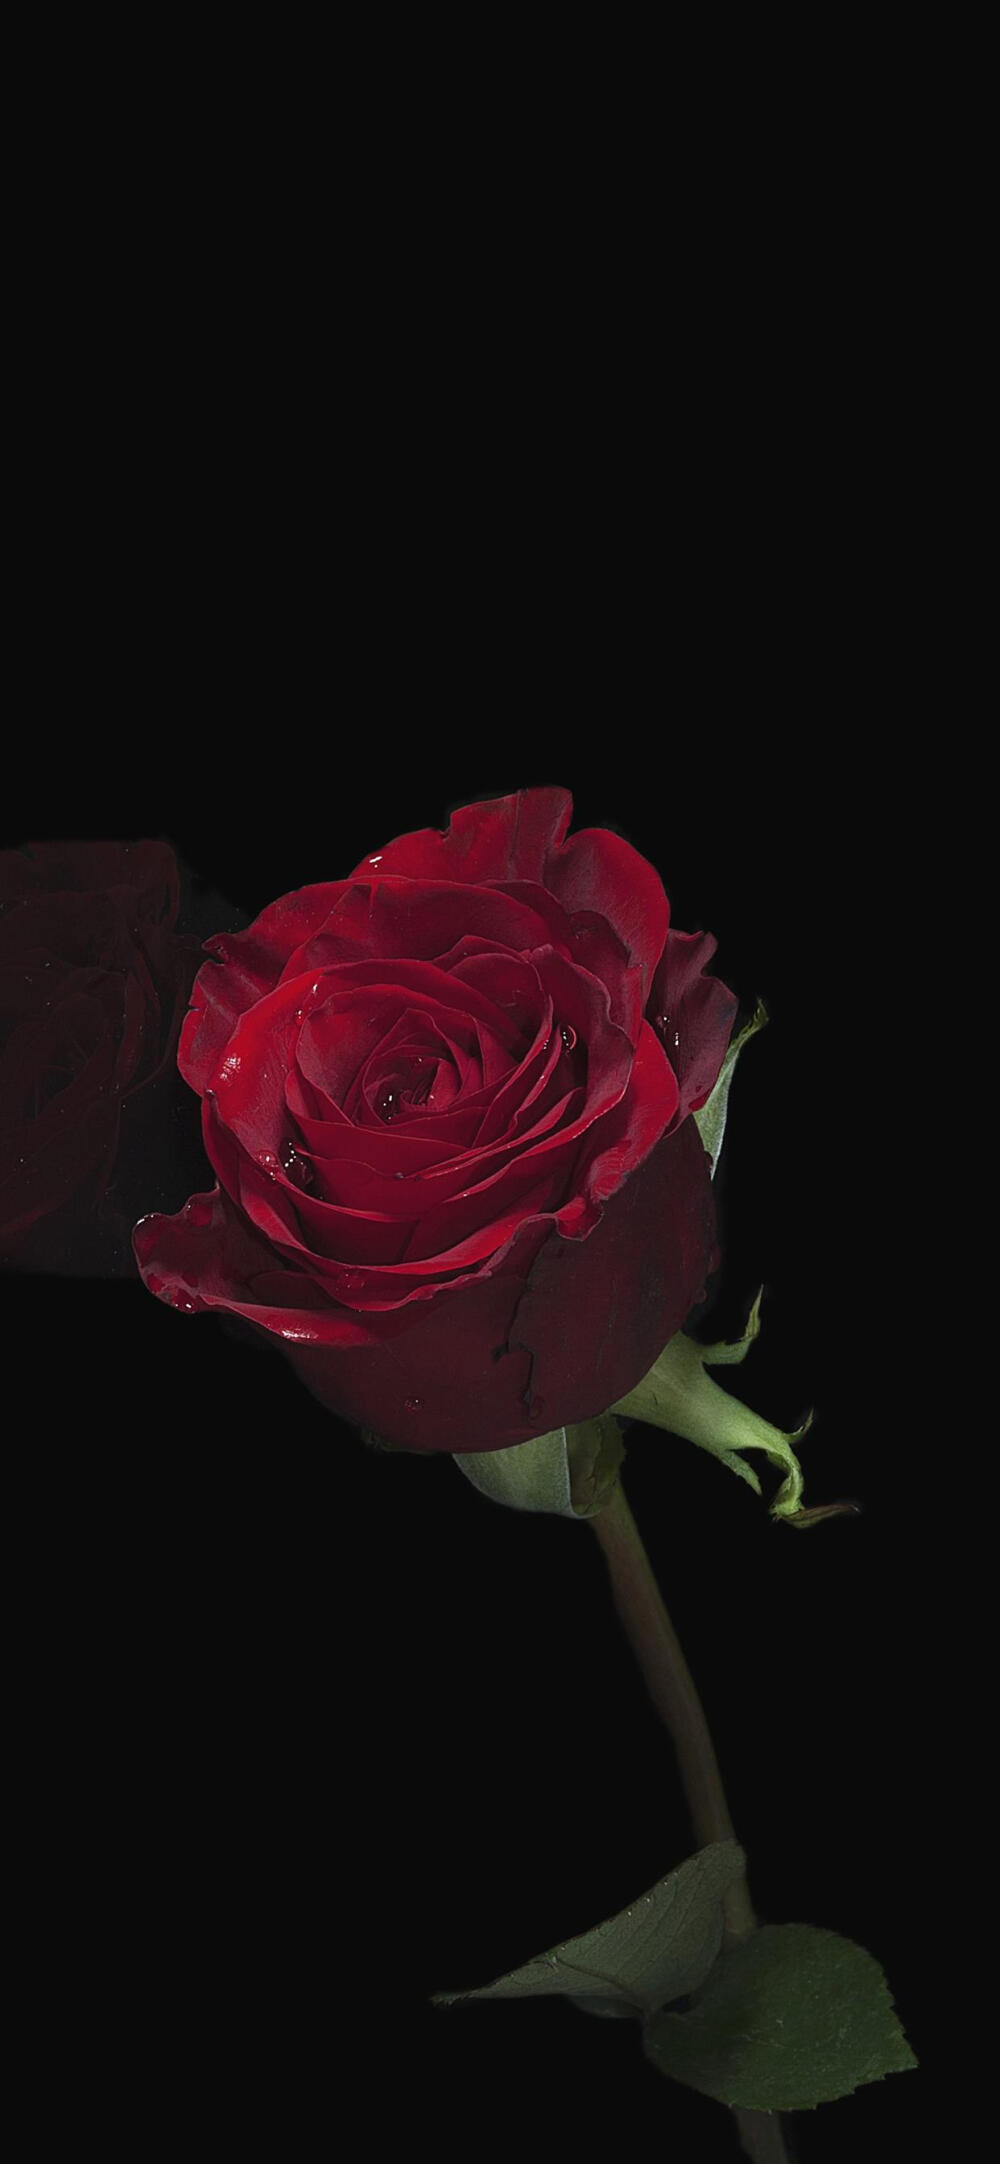 红玫瑰花的花语:希望与你泛起激情的爱78